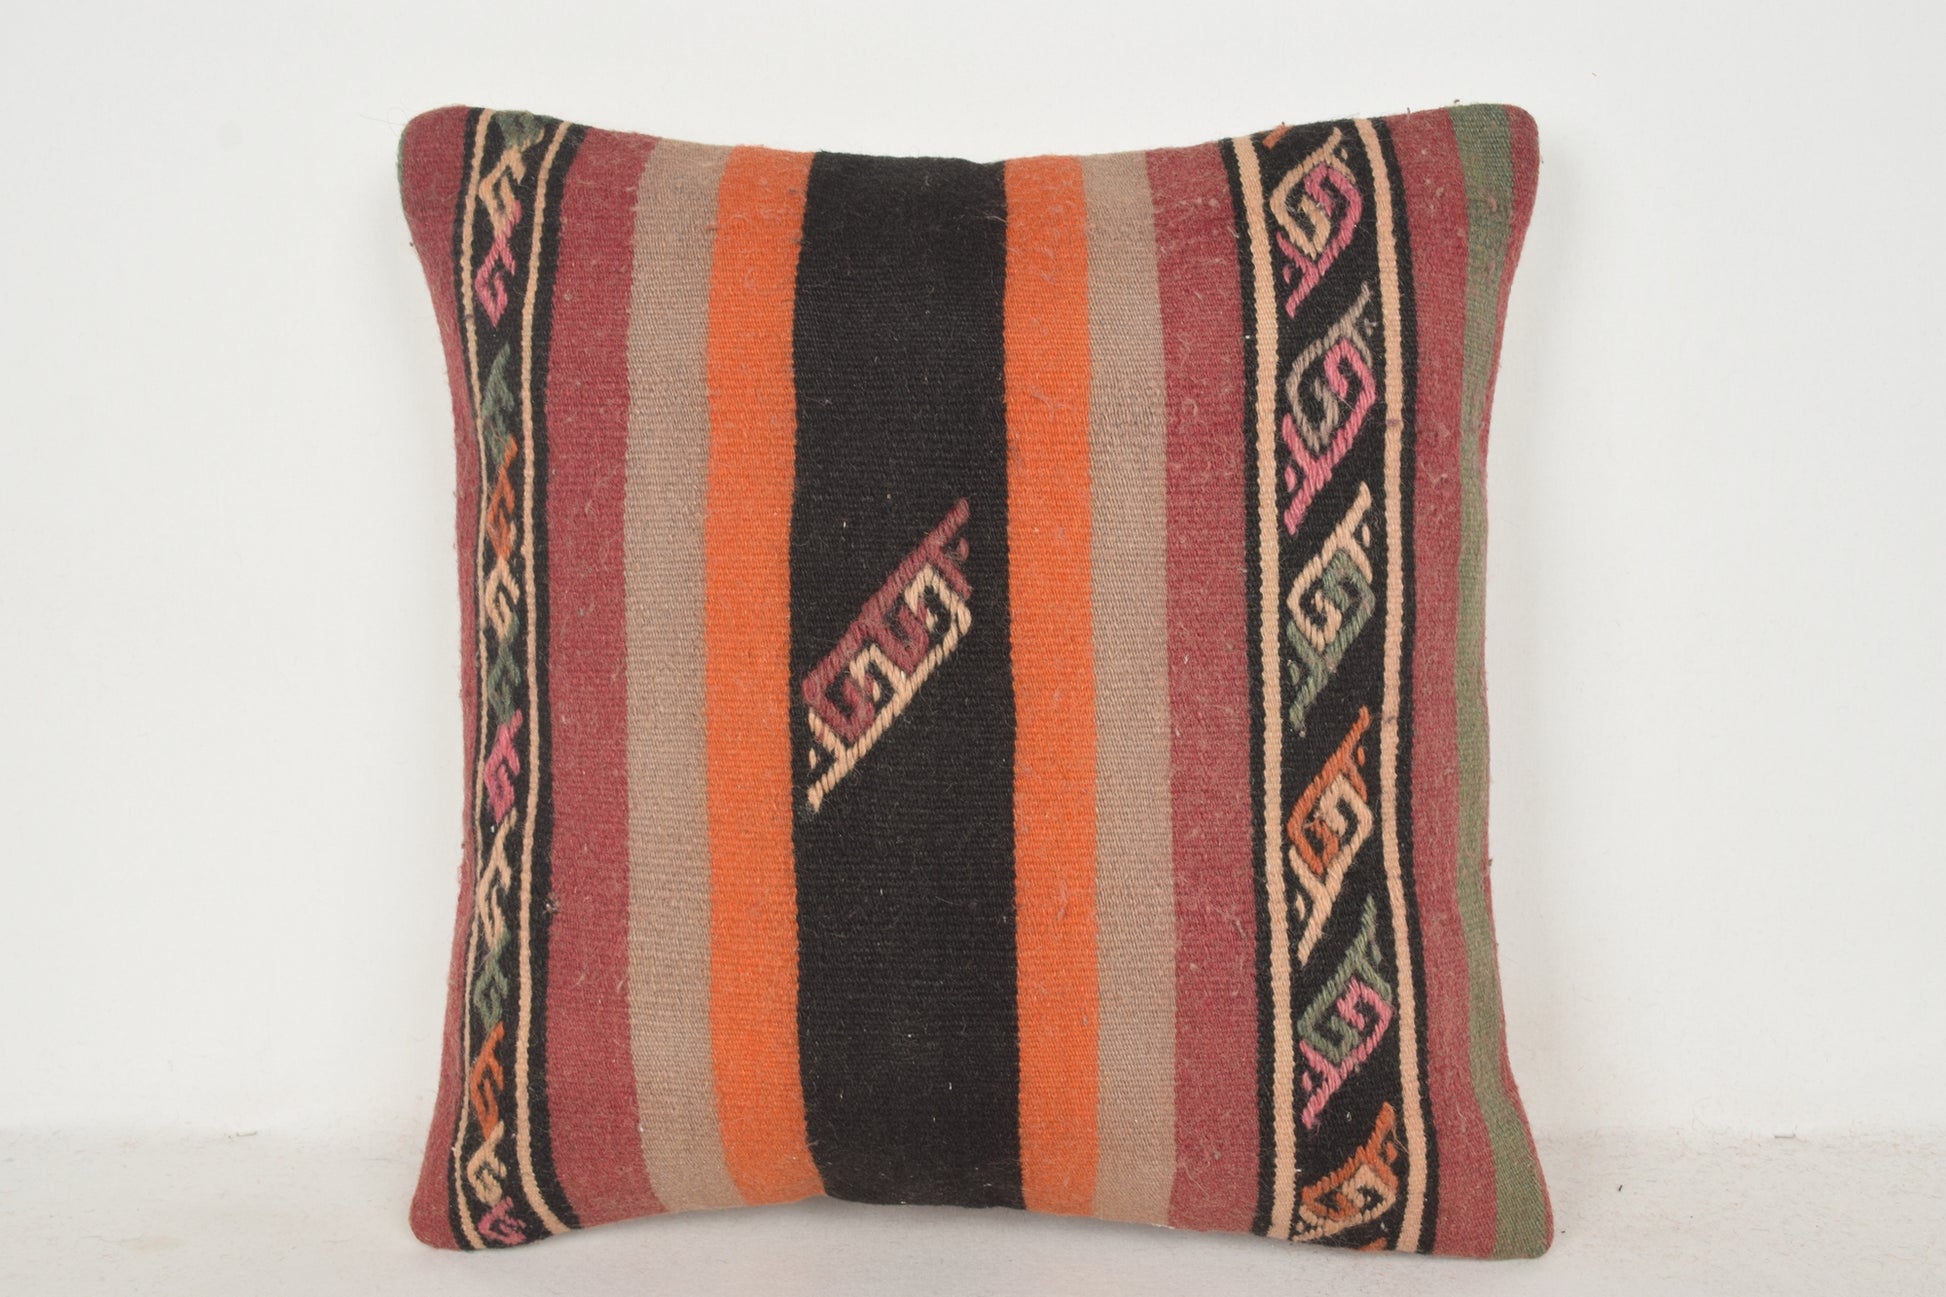 Coral Black Orange Stripe Kilim Rug Zara Home Pillow C00464 18x18 " - 45x45 cm.